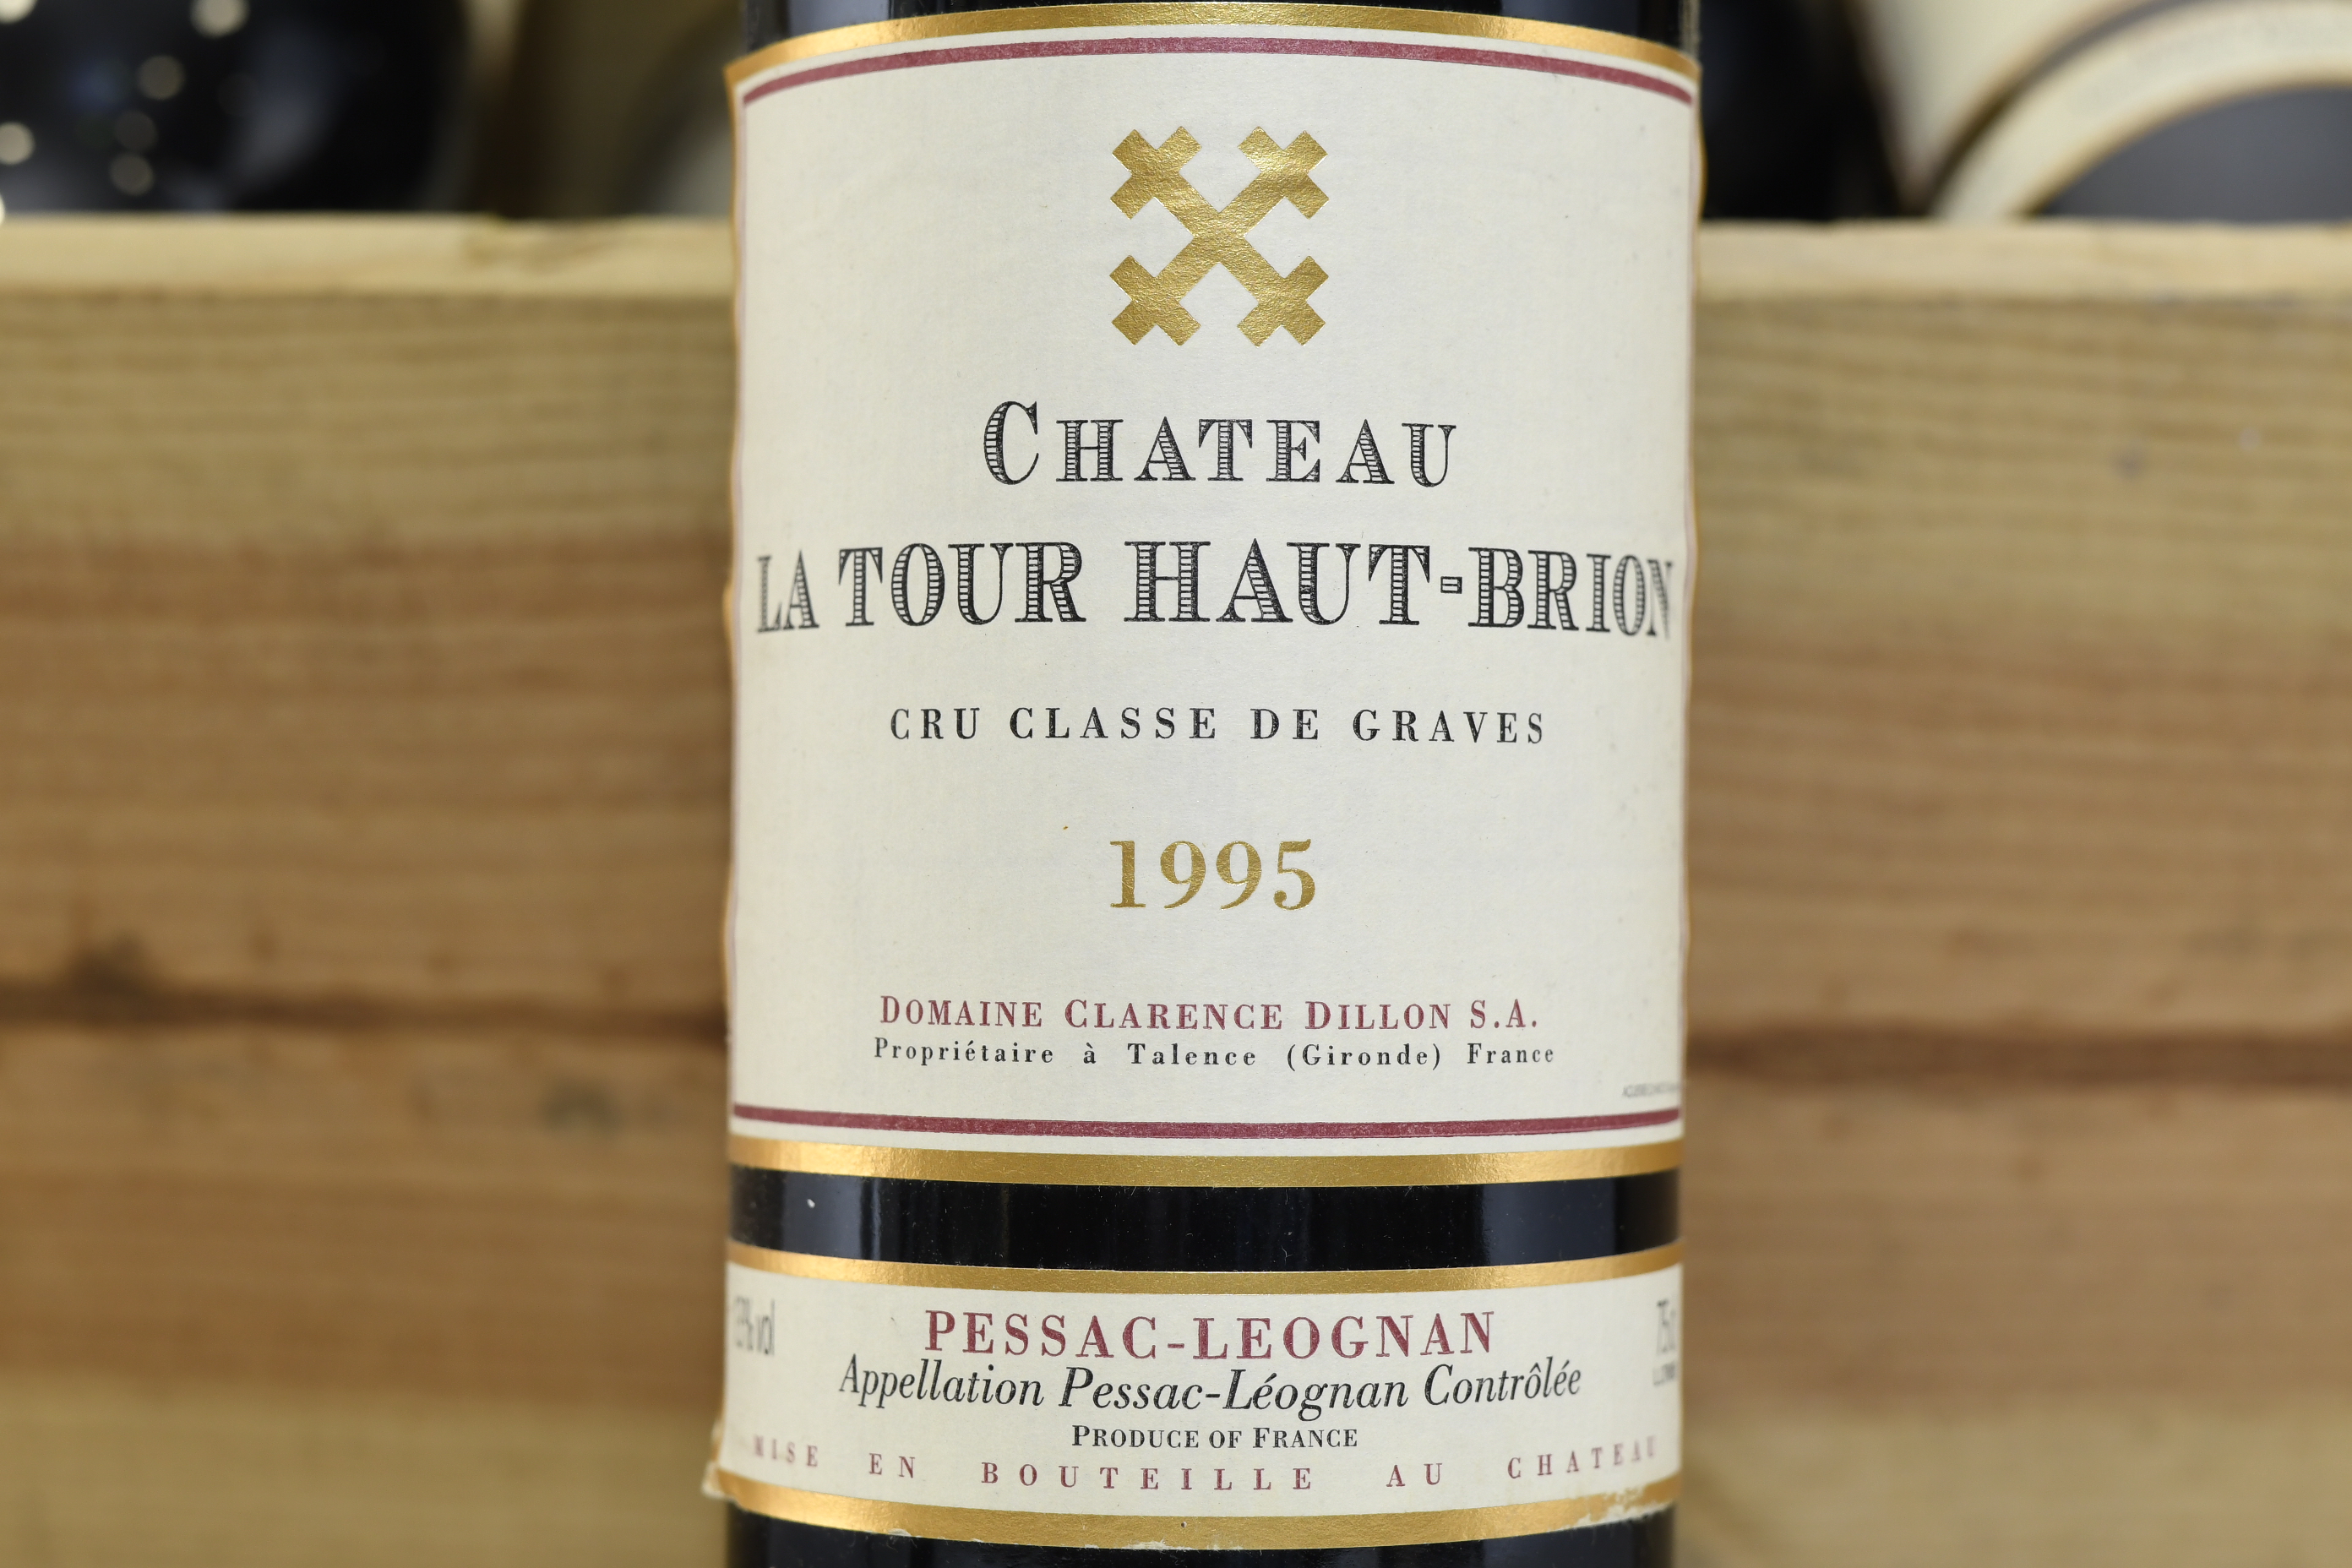 12 Bottles Chateau Latour Haut-Brion Cru Class De Graves 1995 - Image 2 of 3